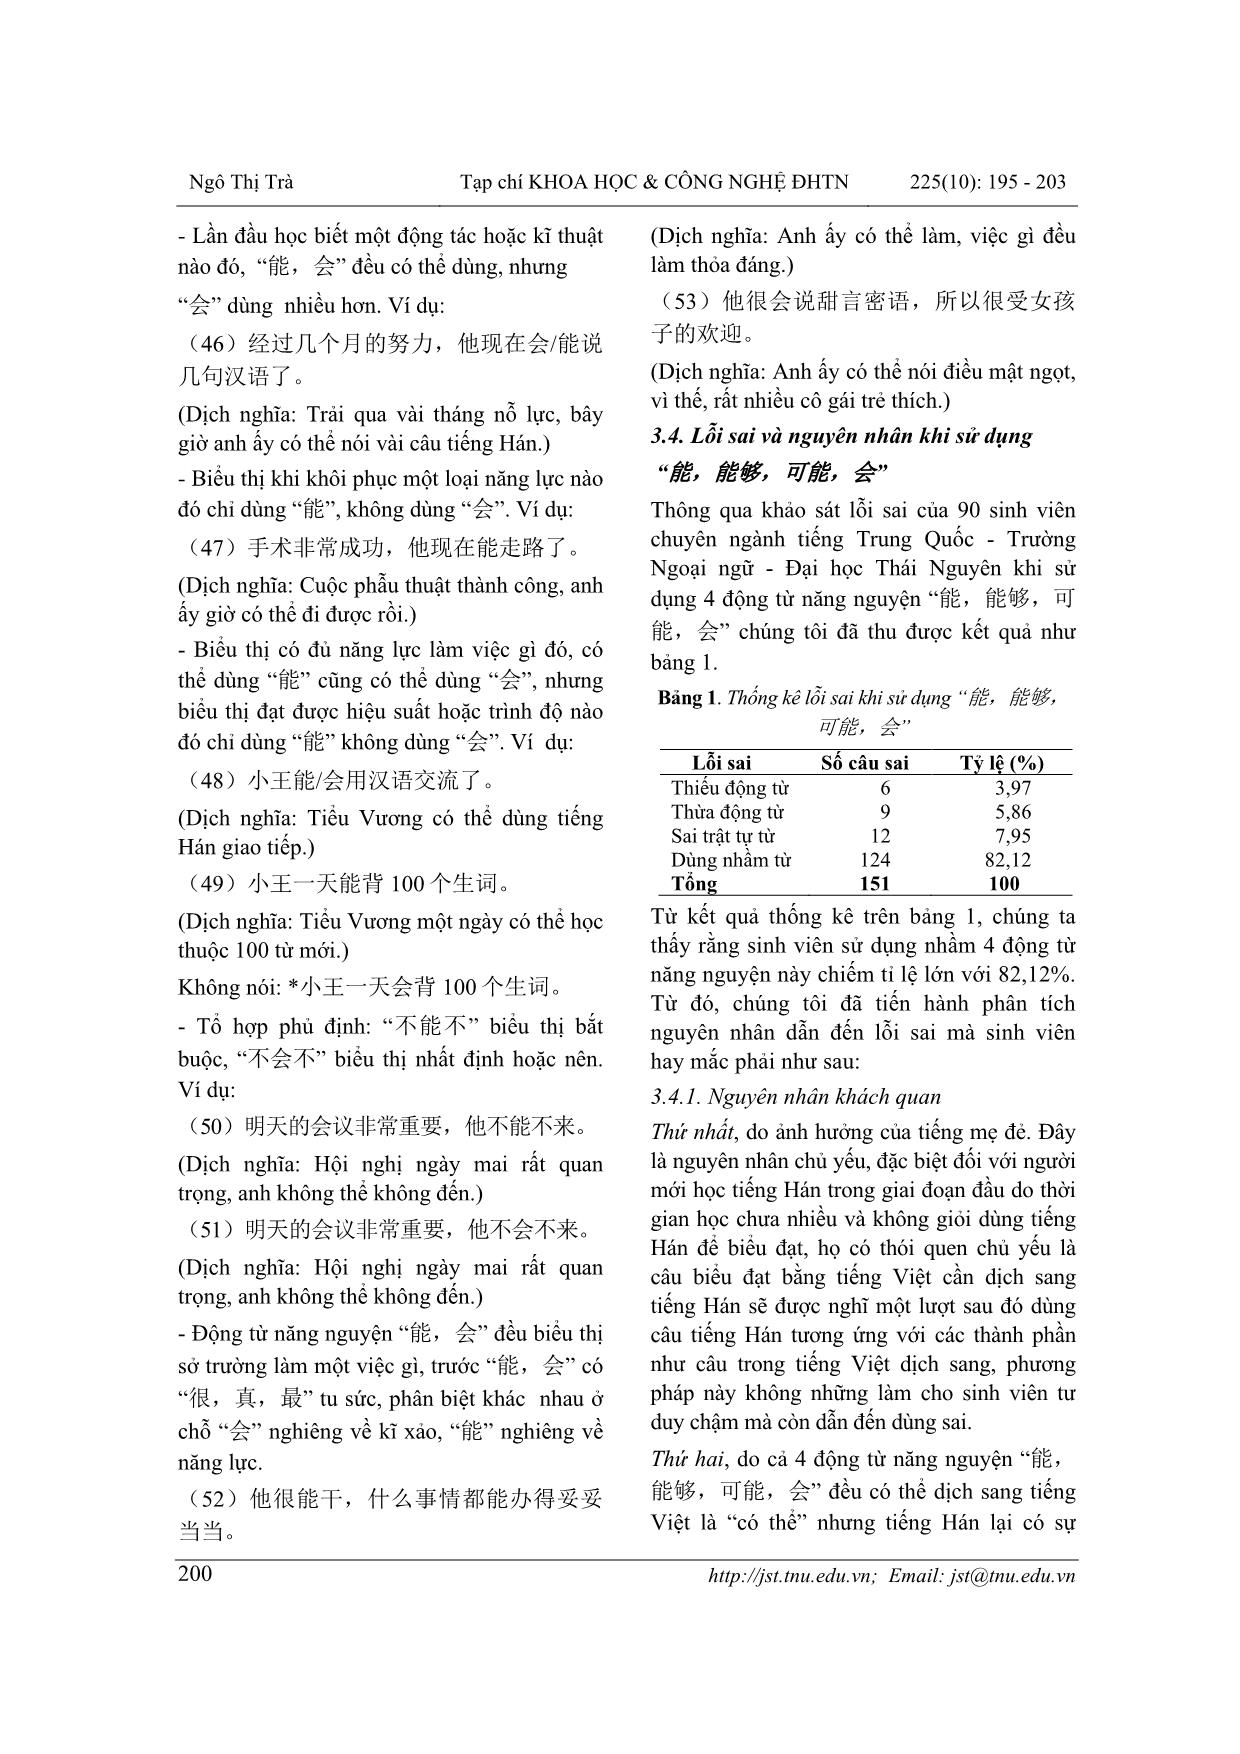 Phân biệt động từ năng nguyện “能, 能够, 可能, 会” trong tiếng Hán hiện đại và định hướng giảng dạy trang 6